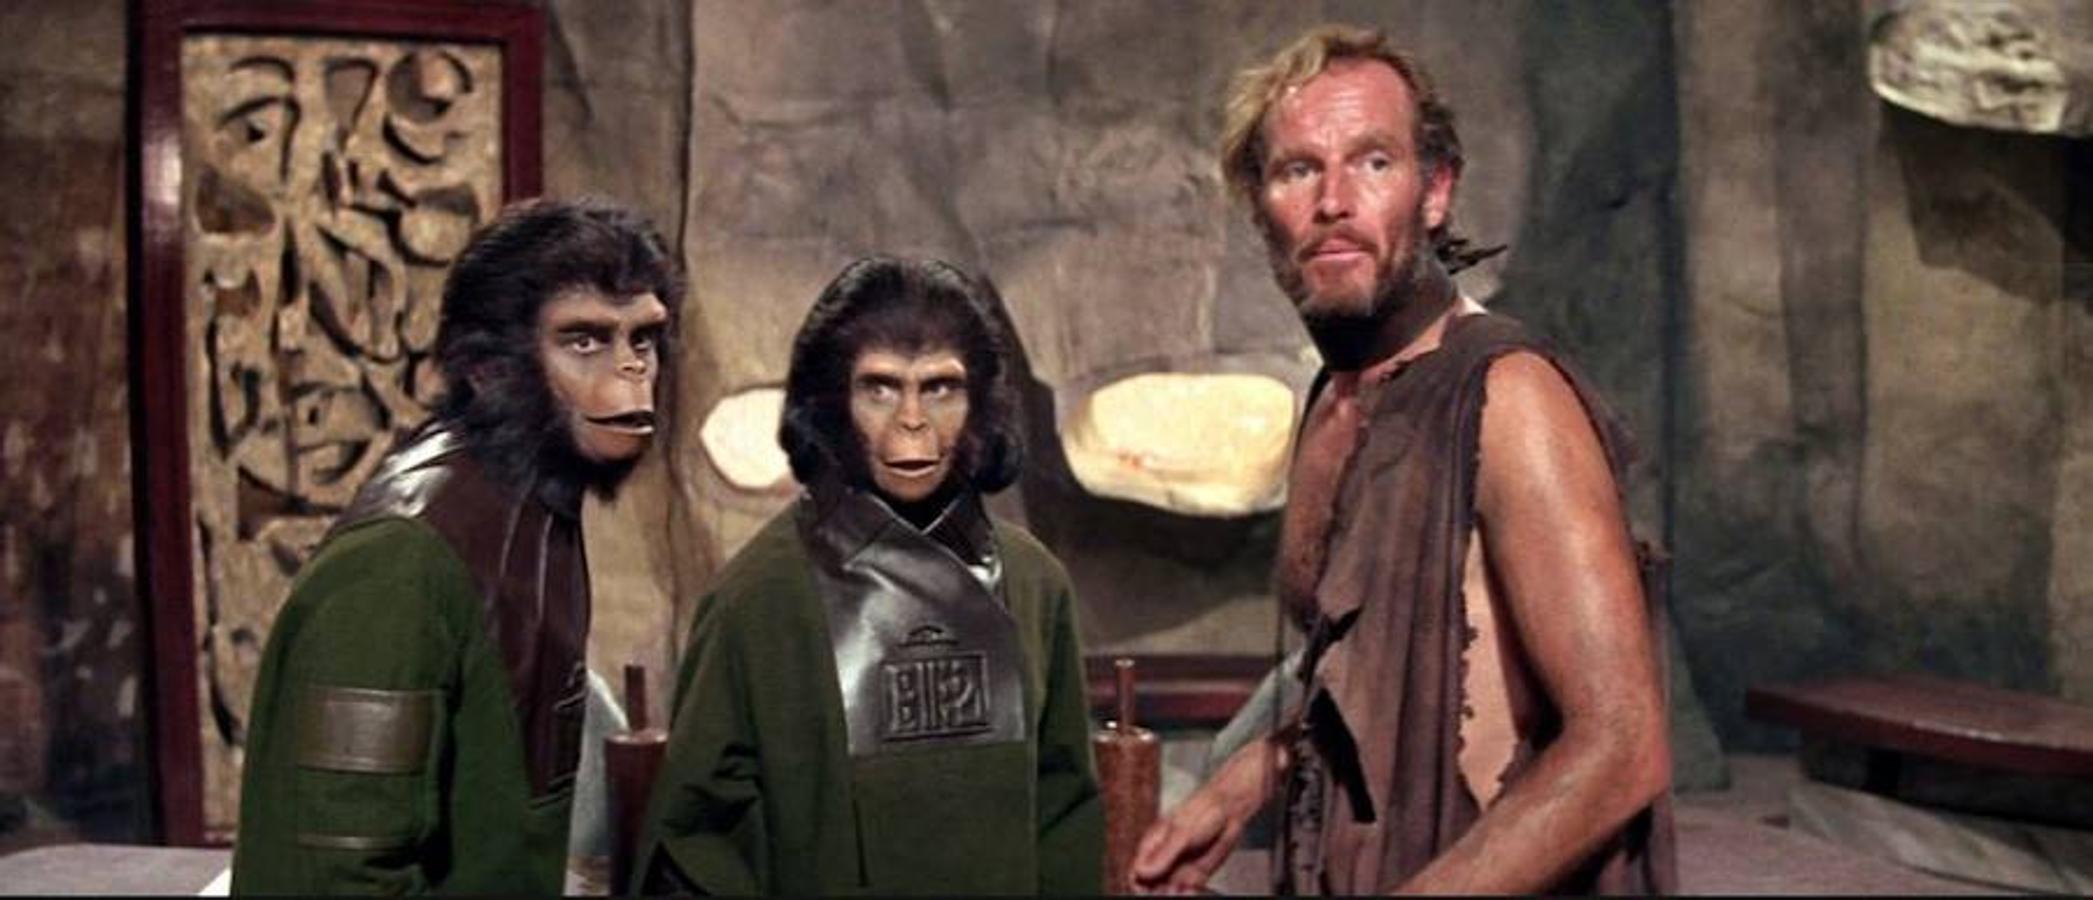 'El planeta de los simios' | Charlton Heston y Roddy McDowall encabezan el reparto de esta película de ciencia ficción dirigida por Franklin J. Schaffner. George Taylor es un astronauta que forma parte de la tripulación de una nave espacial -en una misión de larga duración- que se estrella en un planeta desconocido en el que, a primera vista, no hay vida inteligente. Sin embargo, muy pronto se dará cuenta de que está gobernado por una raza de simios mentalmente muy desarrollados que esclavizan a unos seres humanos que carecen de la facultad de hablar. Cuando su líder, el doctor Zaius, descubre horrorizado que Taylor posee el don de la palabra, decide que hay que eliminarlo.